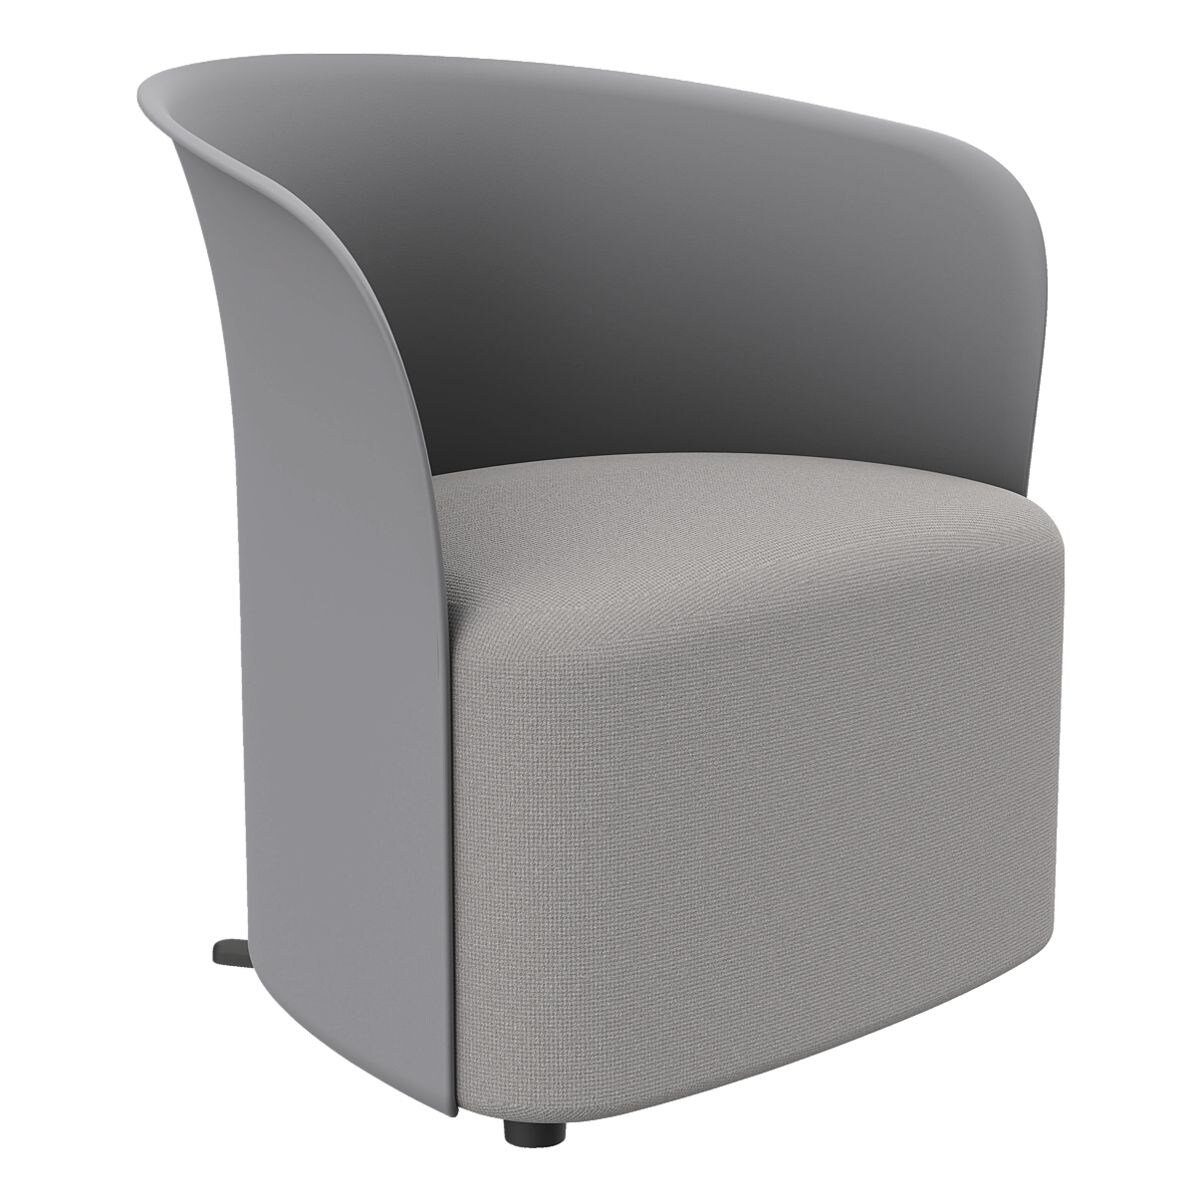 PAPERFLOW Sessel Crown, Clubsessel, durchgehende Rückenlehne, Standfüße, Sitzhöhe 38 cm